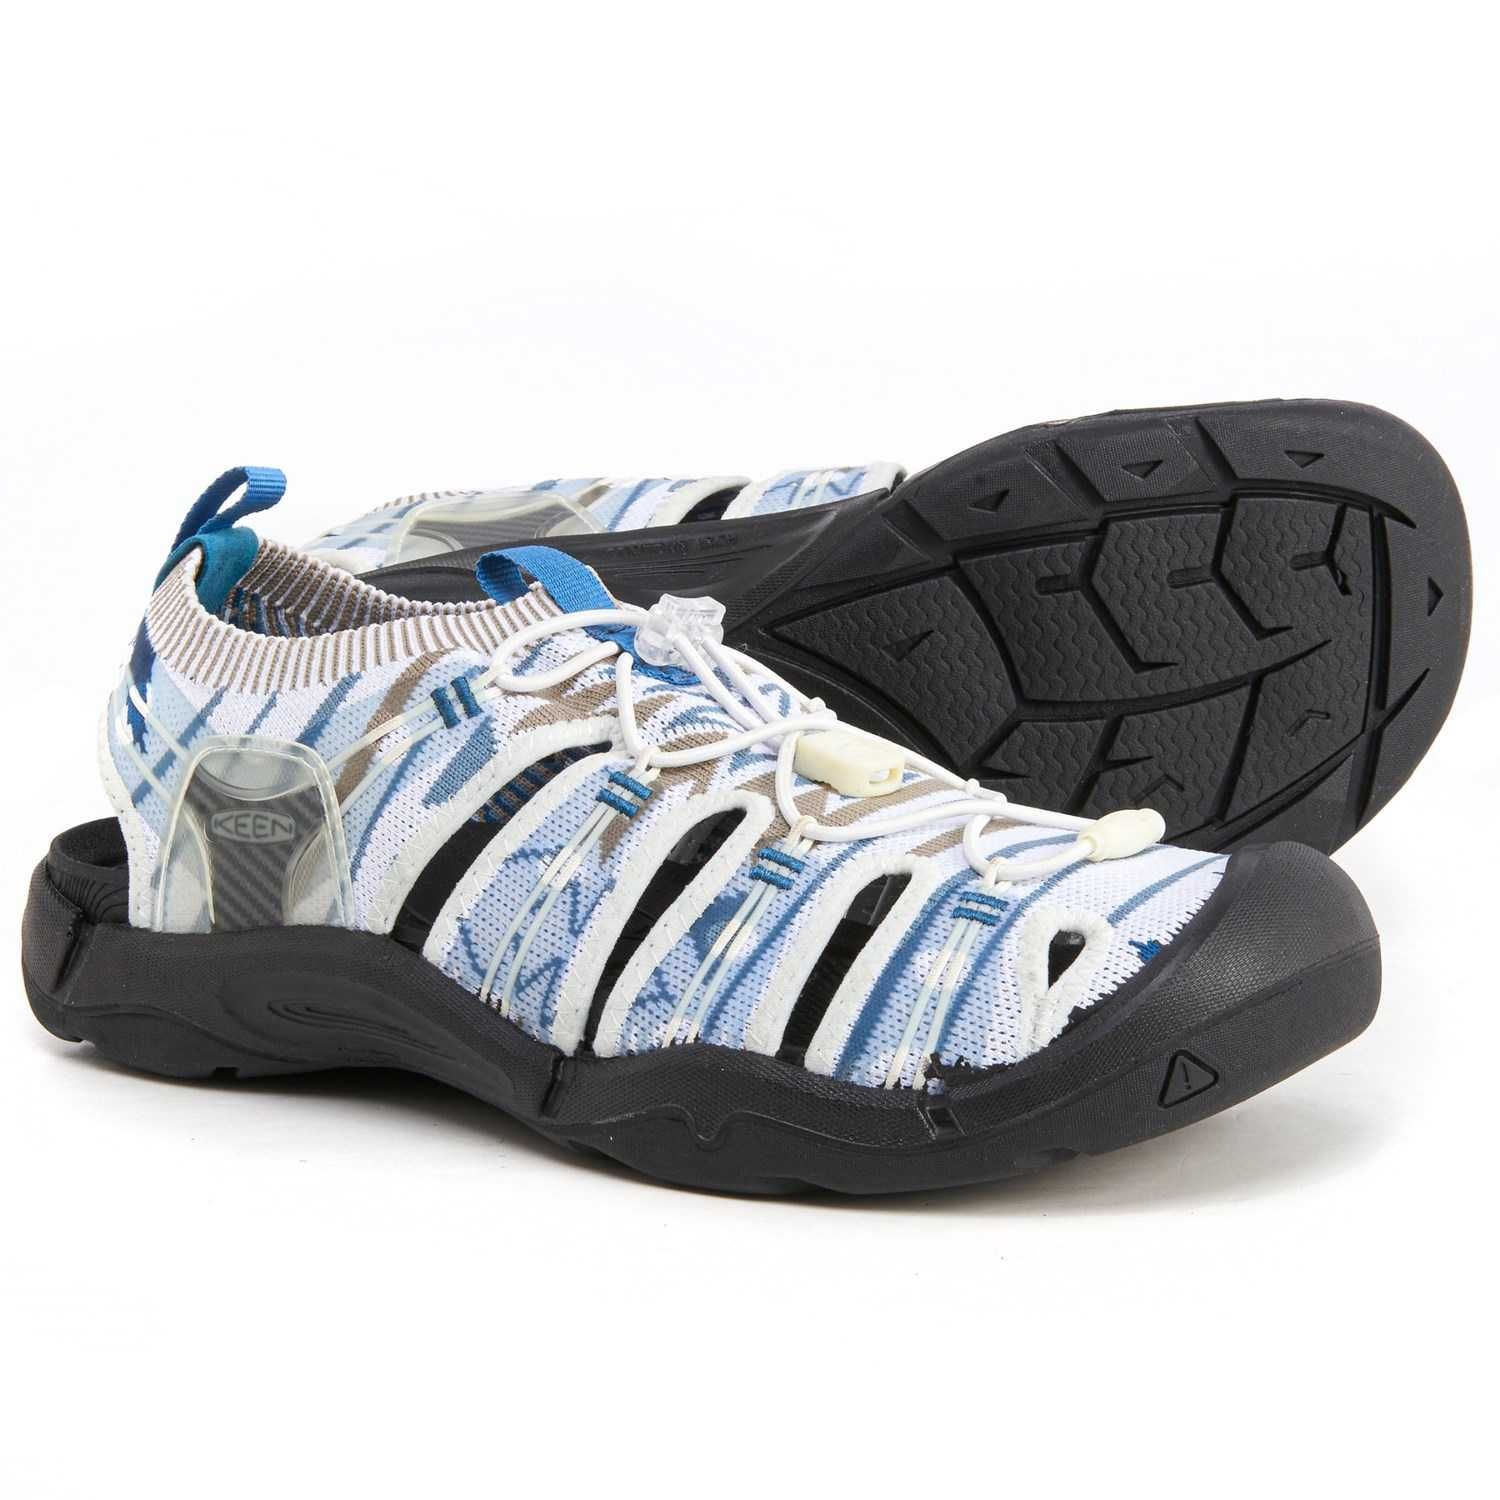 Мужские сандалии Keen Evofit One Sports Sandals 42-42.5 euro